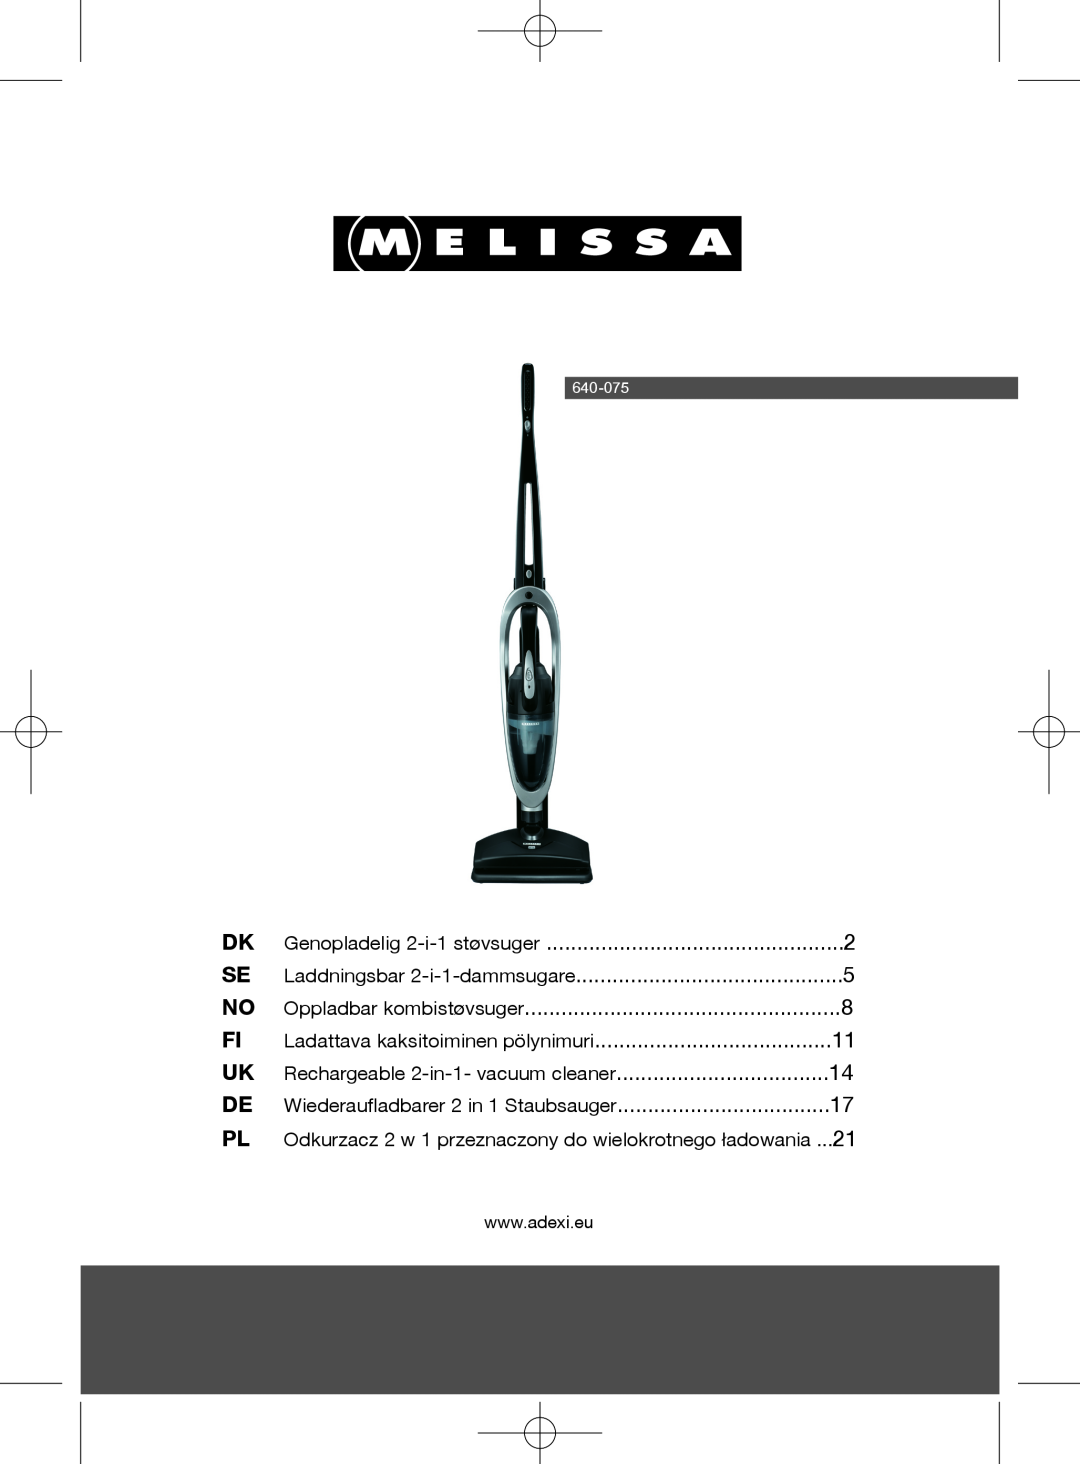 Melissa 640-075 manual Rechargeable 2-in-1-vacuum cleaner, Wiederaufladbarer 2 in 1 Staubsauger, Oppladbar kombistøvsuger 